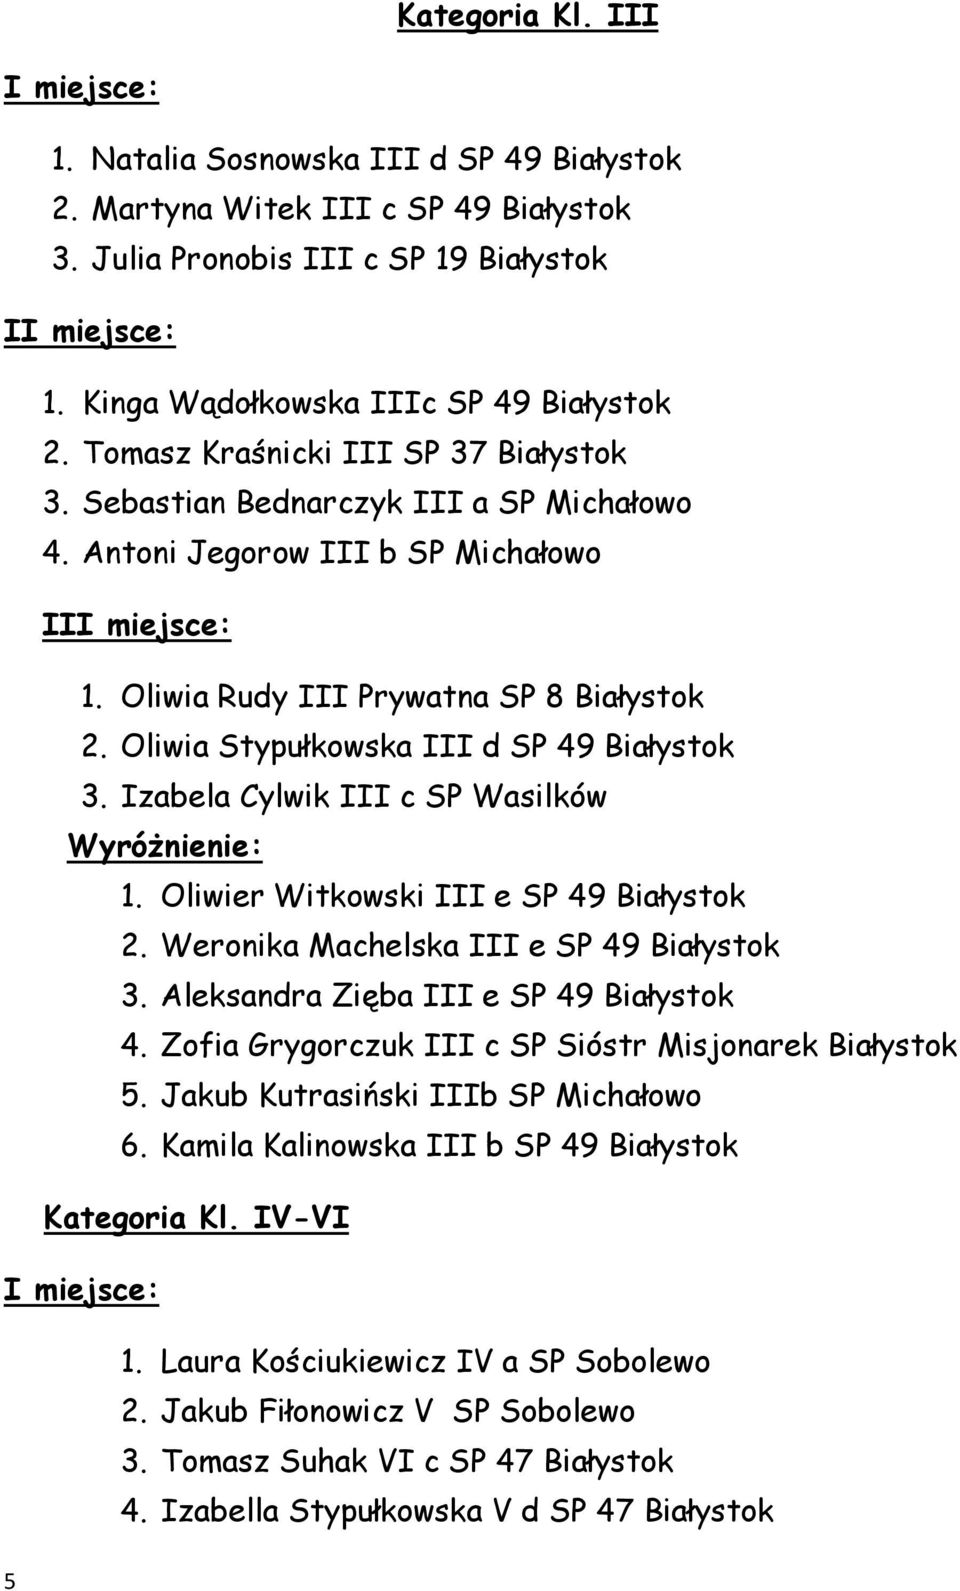 Oliwia Stypułkowska III d SP 49 Białystok 3. Izabela Cylwik III c SP Wasilków Wyróżnienie: 1. Oliwier Witkowski III e SP 49 Białystok 2. Weronika Machelska III e SP 49 Białystok 3.